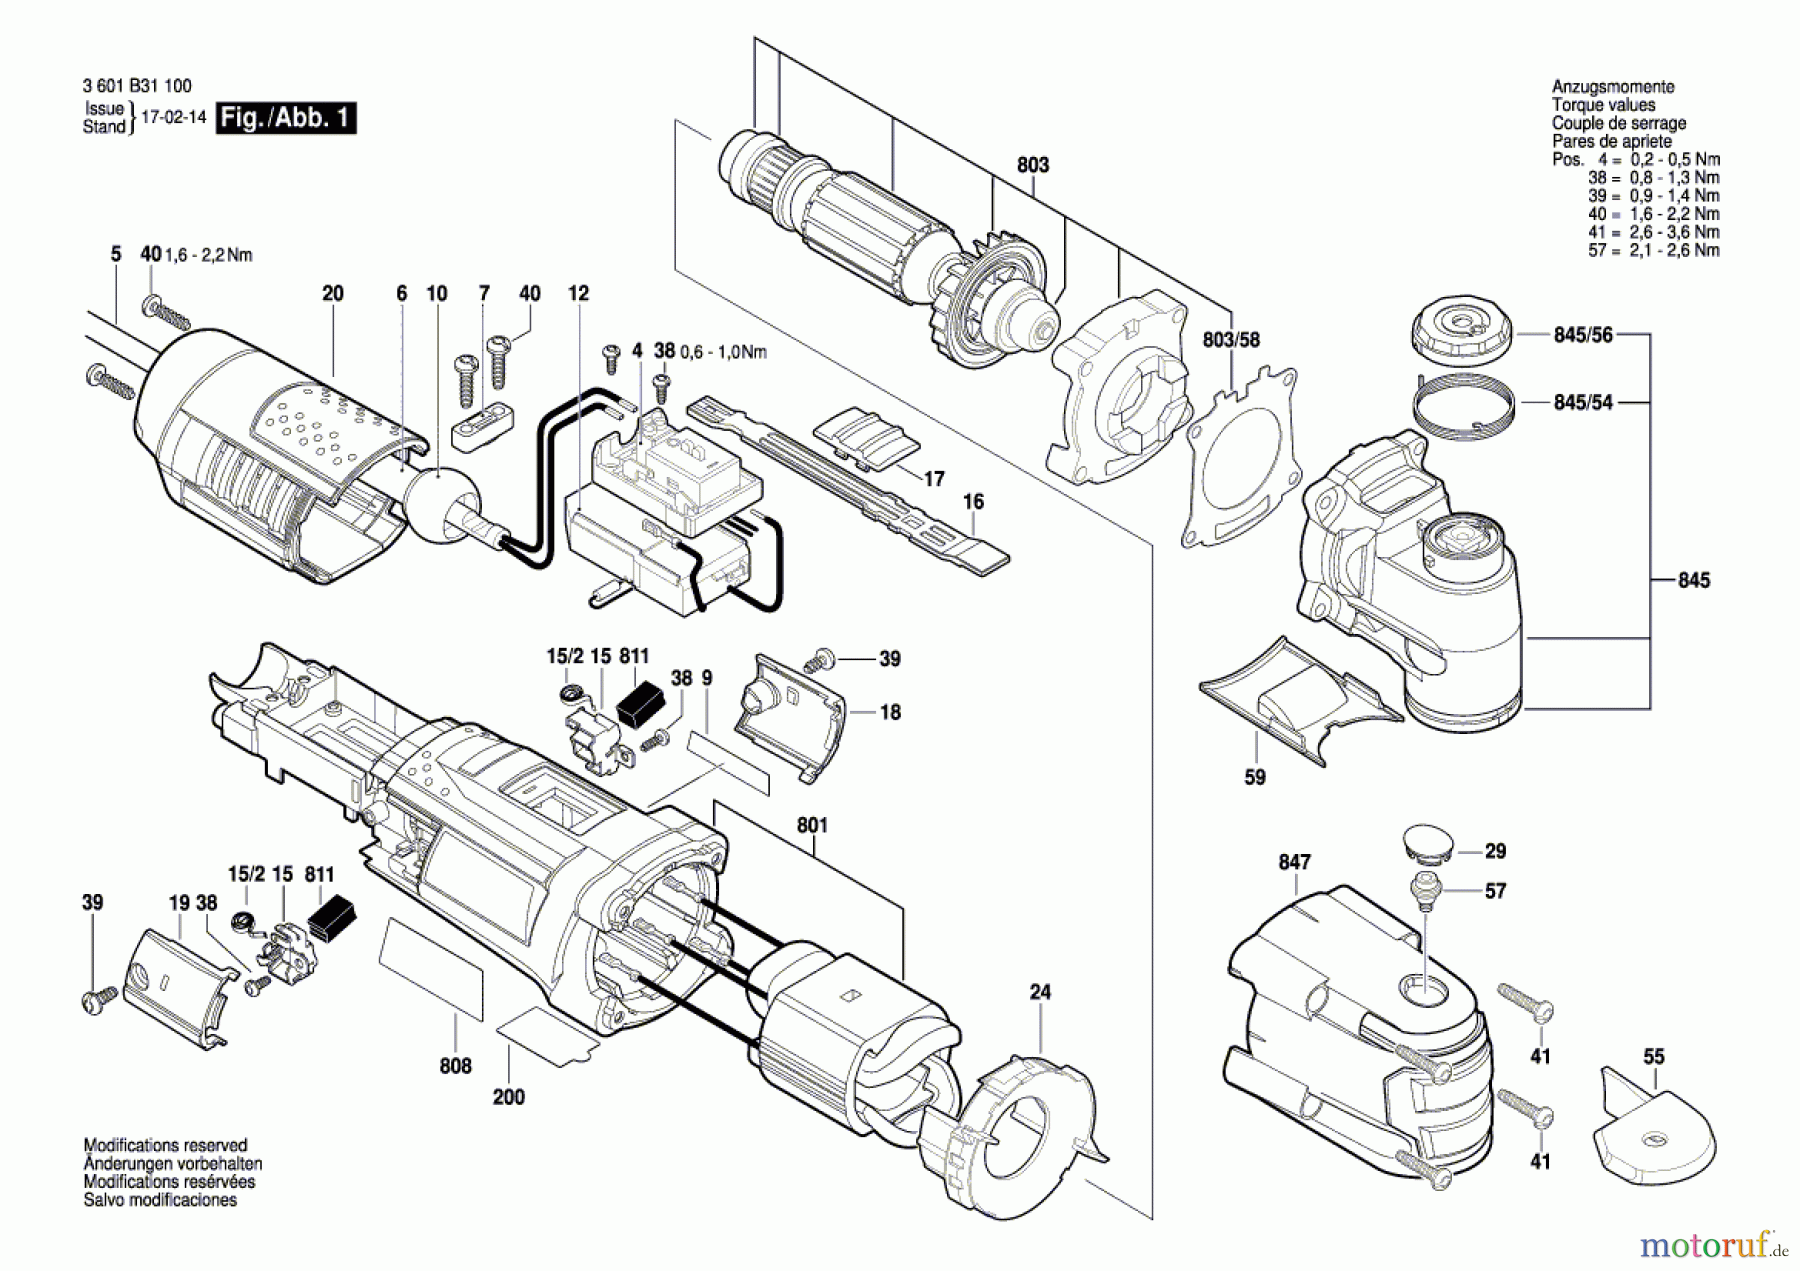  Bosch Werkzeug Multifunktionswerkzeug UM 550 SLM Seite 1